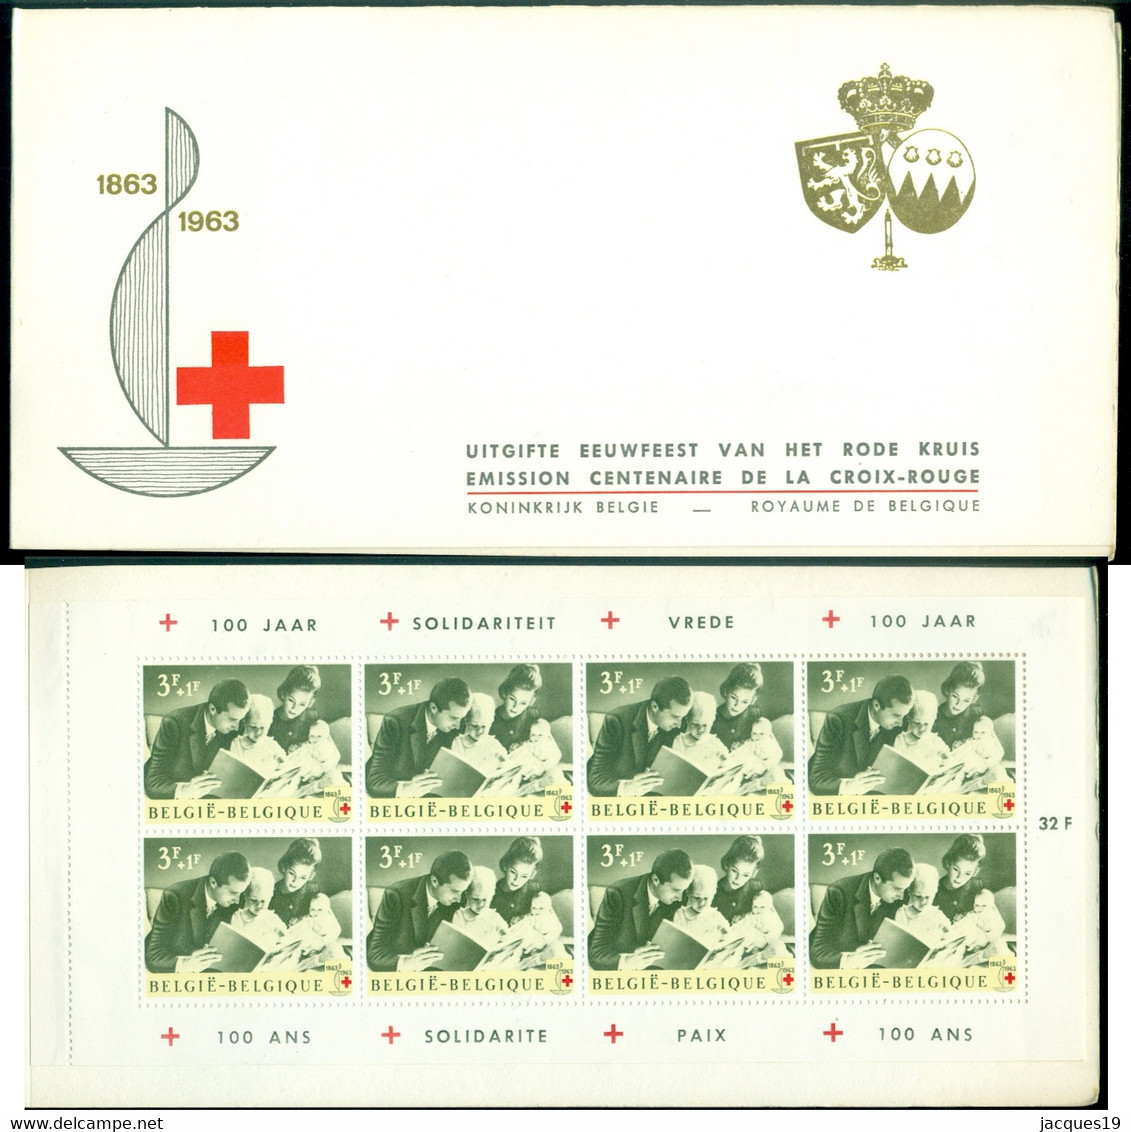 Belgie 1963 Boekje Eeuwfeest Rode Kruis Voorrang Nederlands OPB 1267B MNH - Ohne Zuordnung